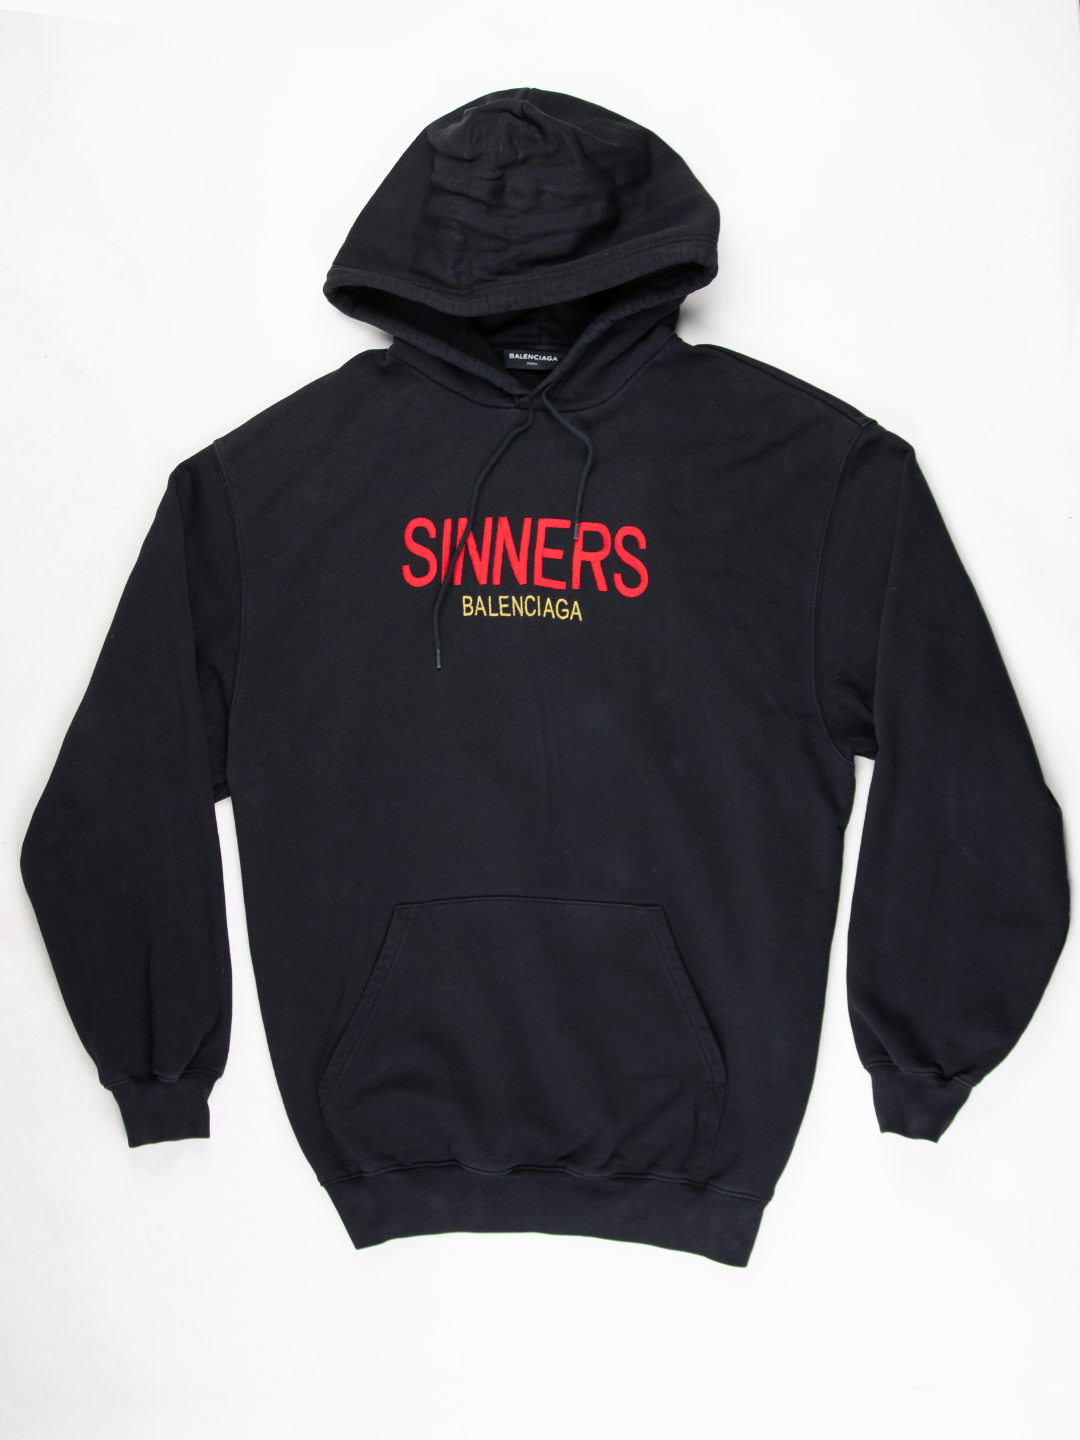 'Sinners' Hoodie